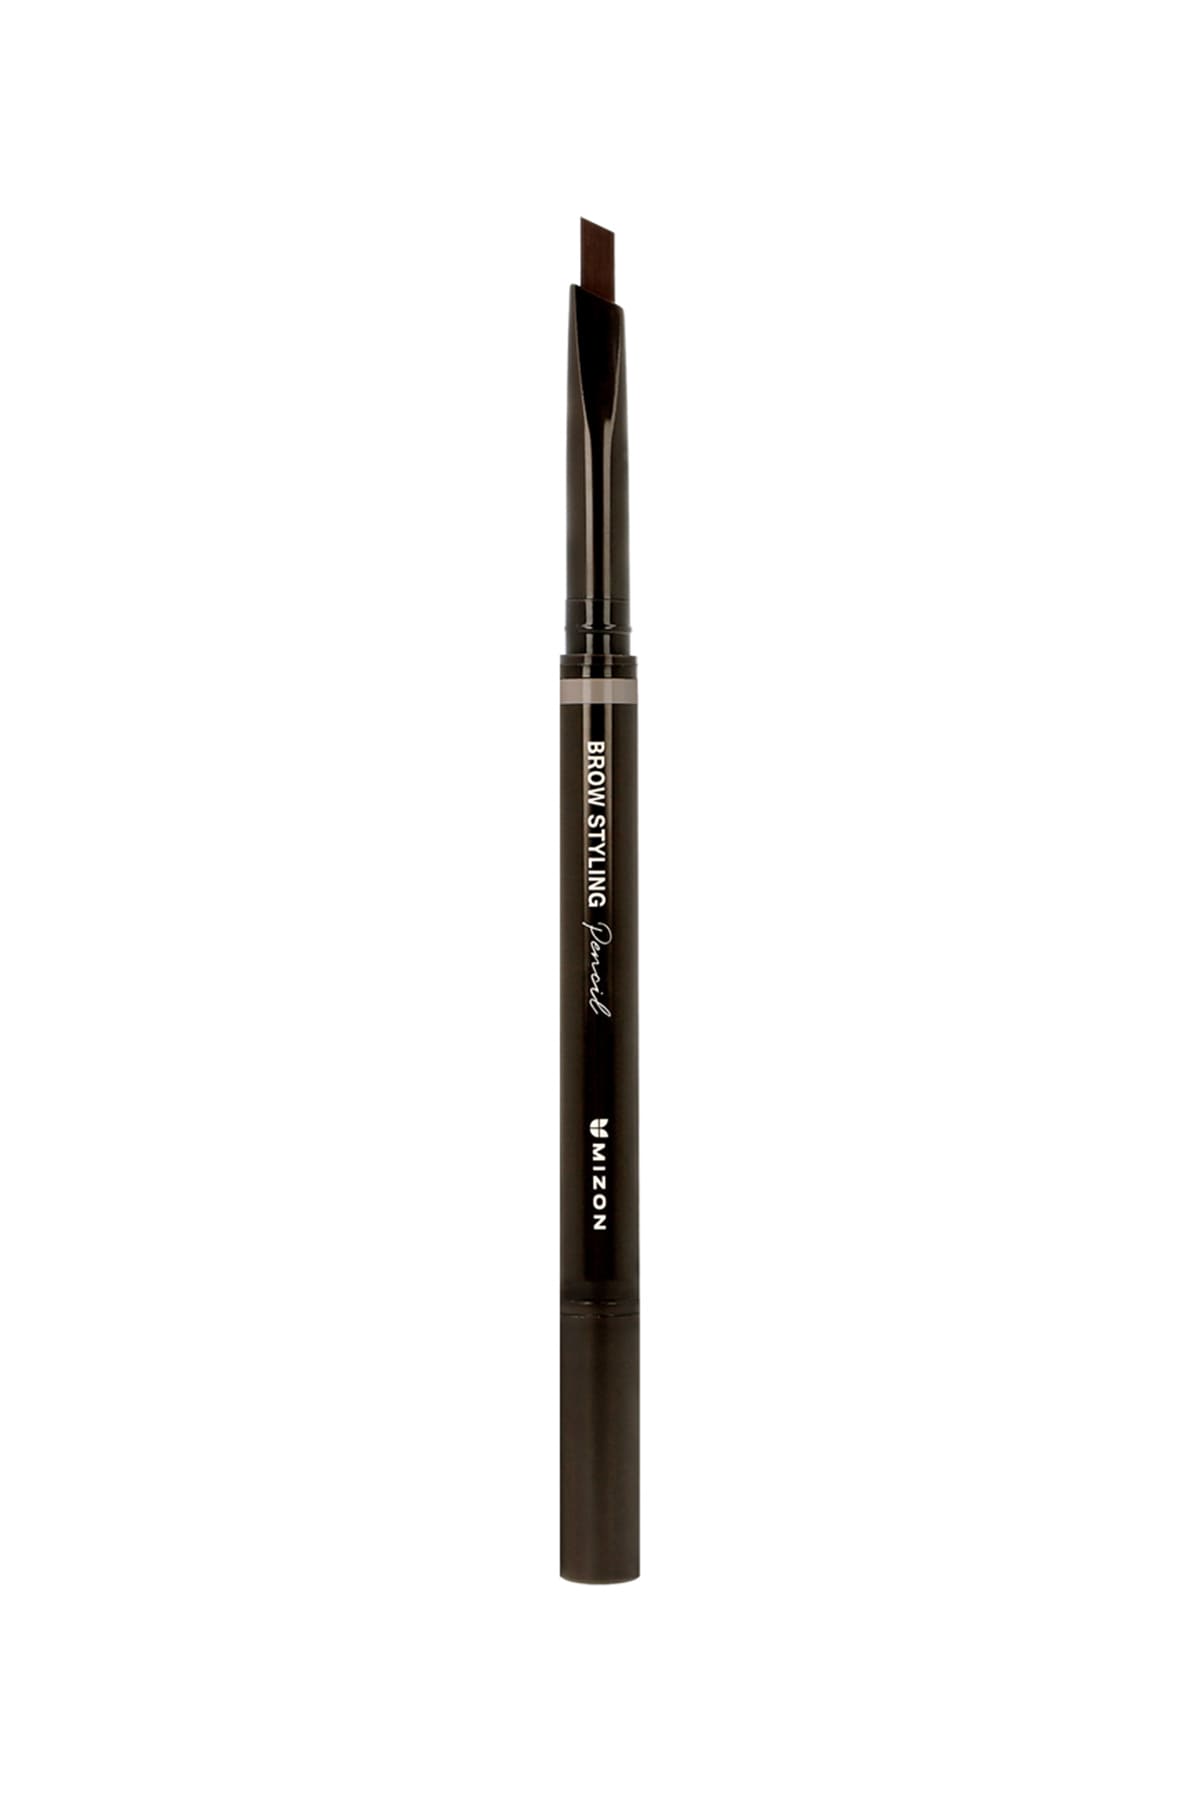 Mizon Brow Styling Pencil #Brown 0.35g - Doğal Kaş Kalemi #Kahverengi